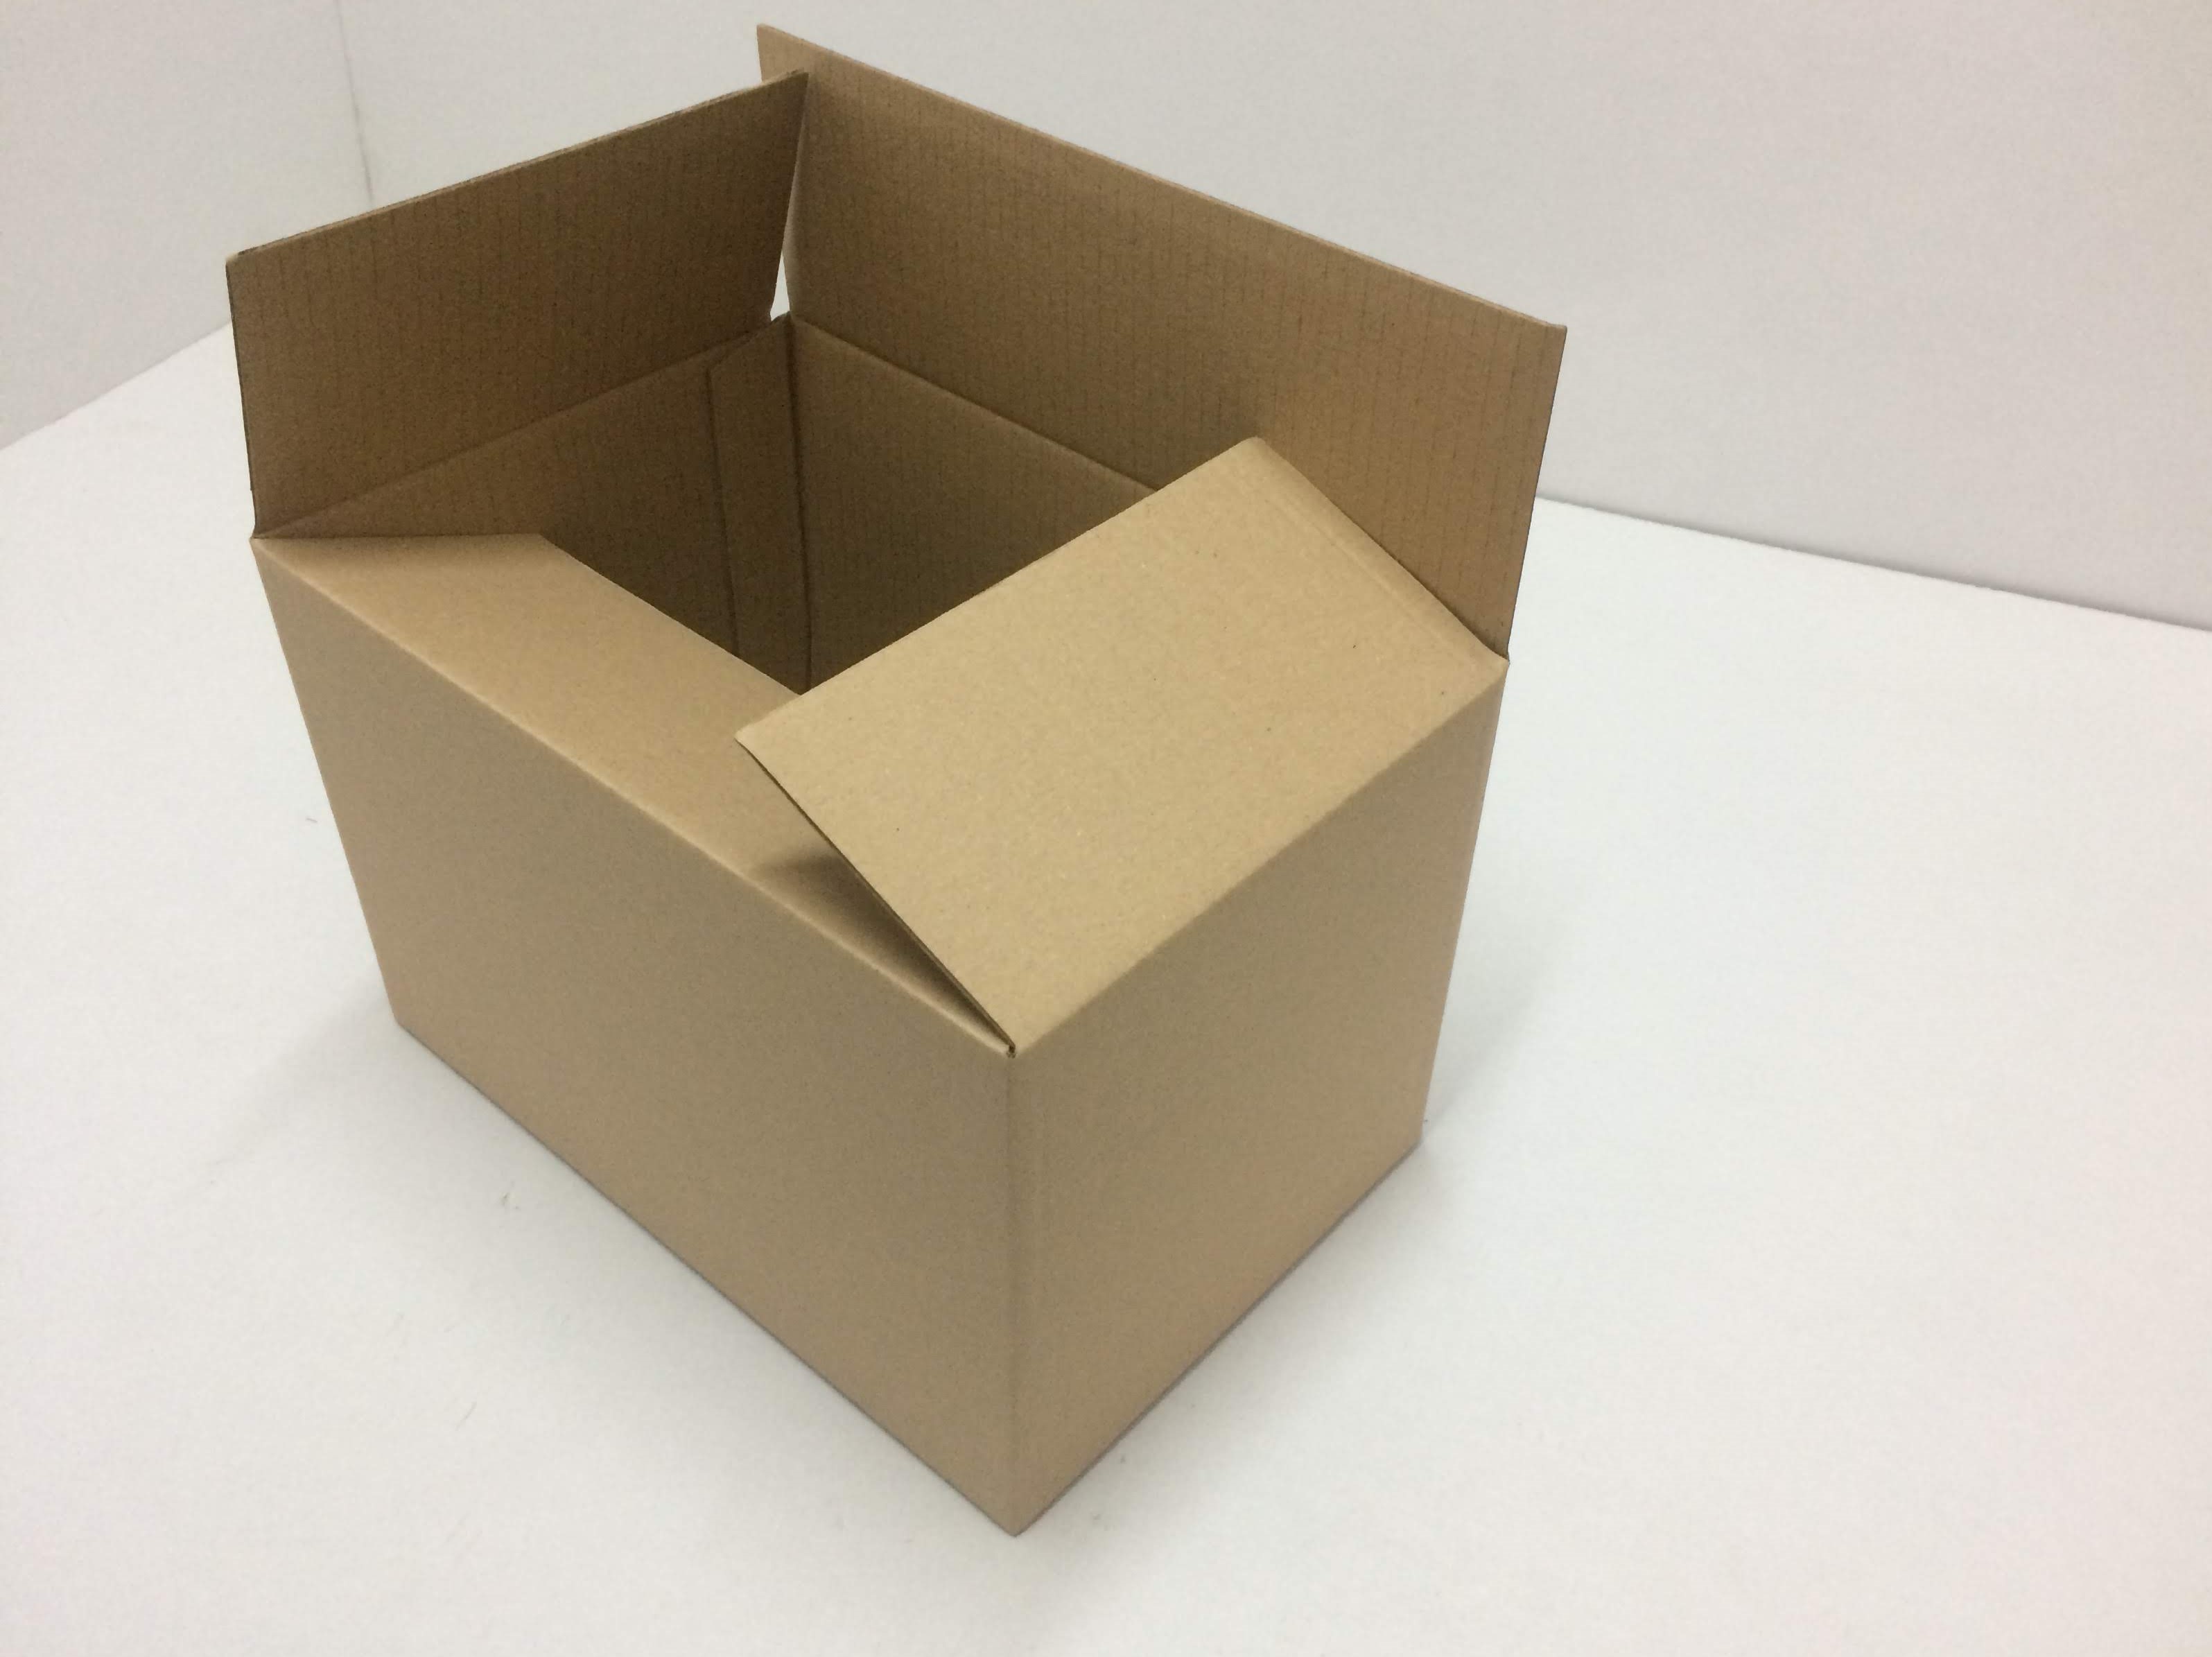 kartónová krabica 600x400x300mm   3VL, 15ks/balenie, vonkajší rozmer,    č.59